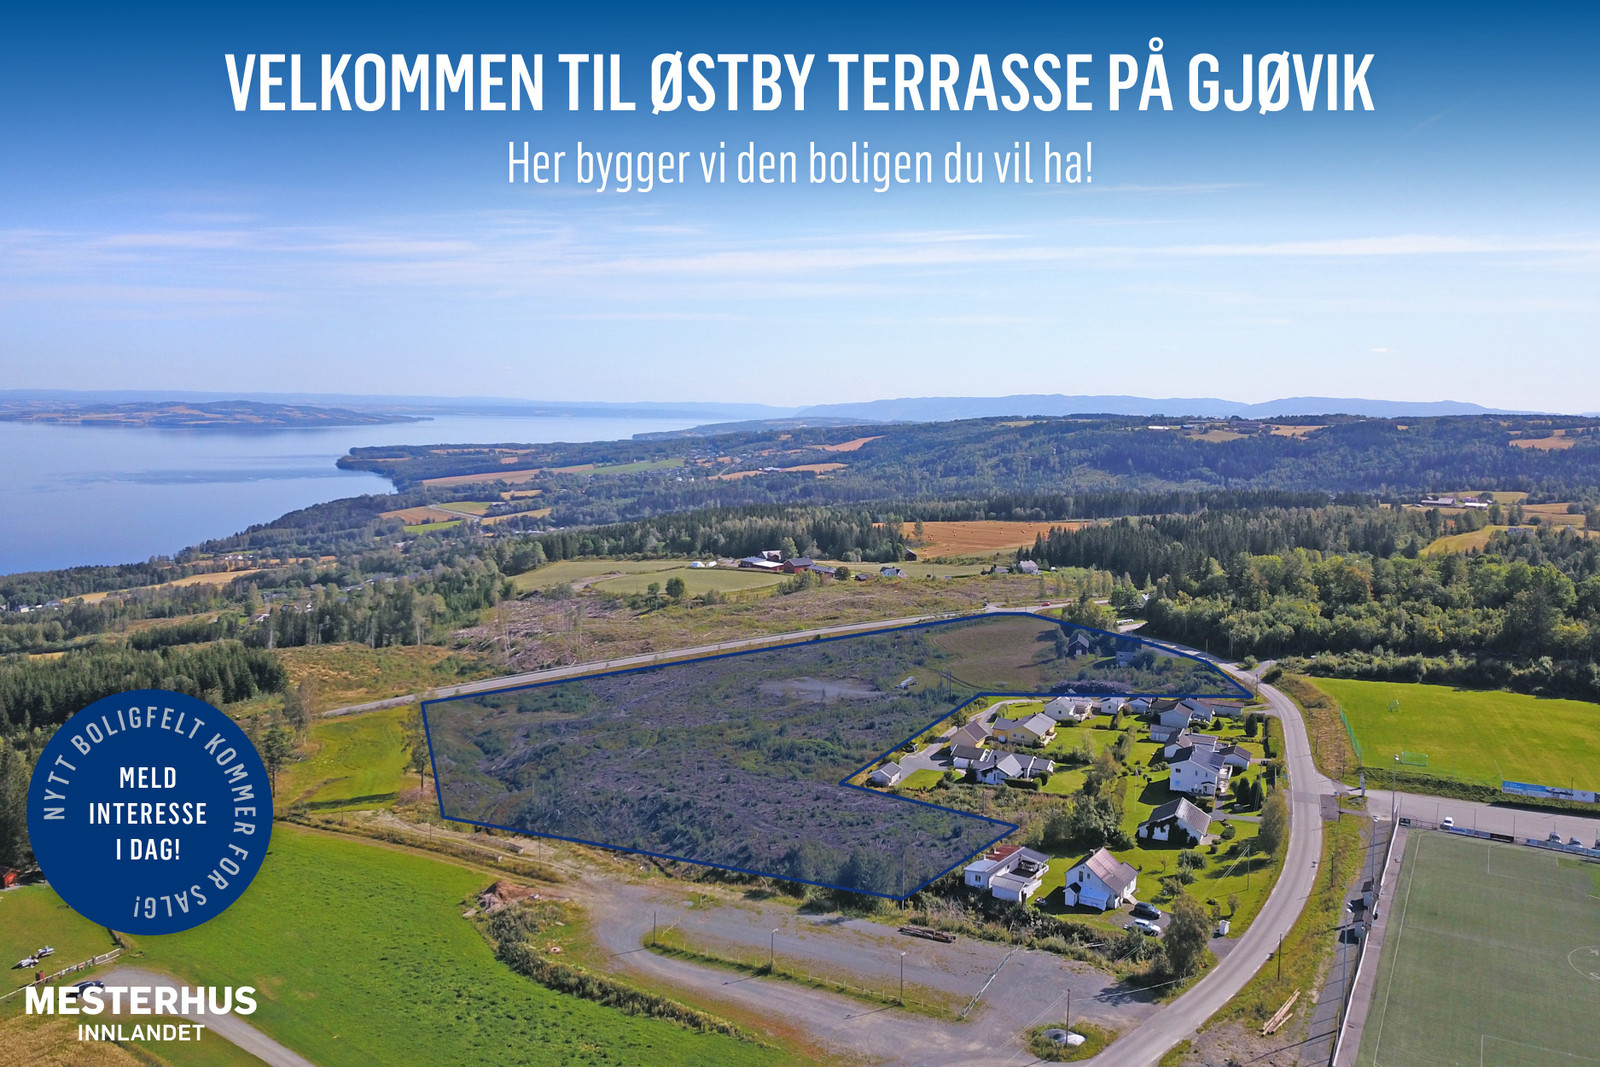 Her på Gjøviks tak kan vi bygge det hjemmet du vil ha!